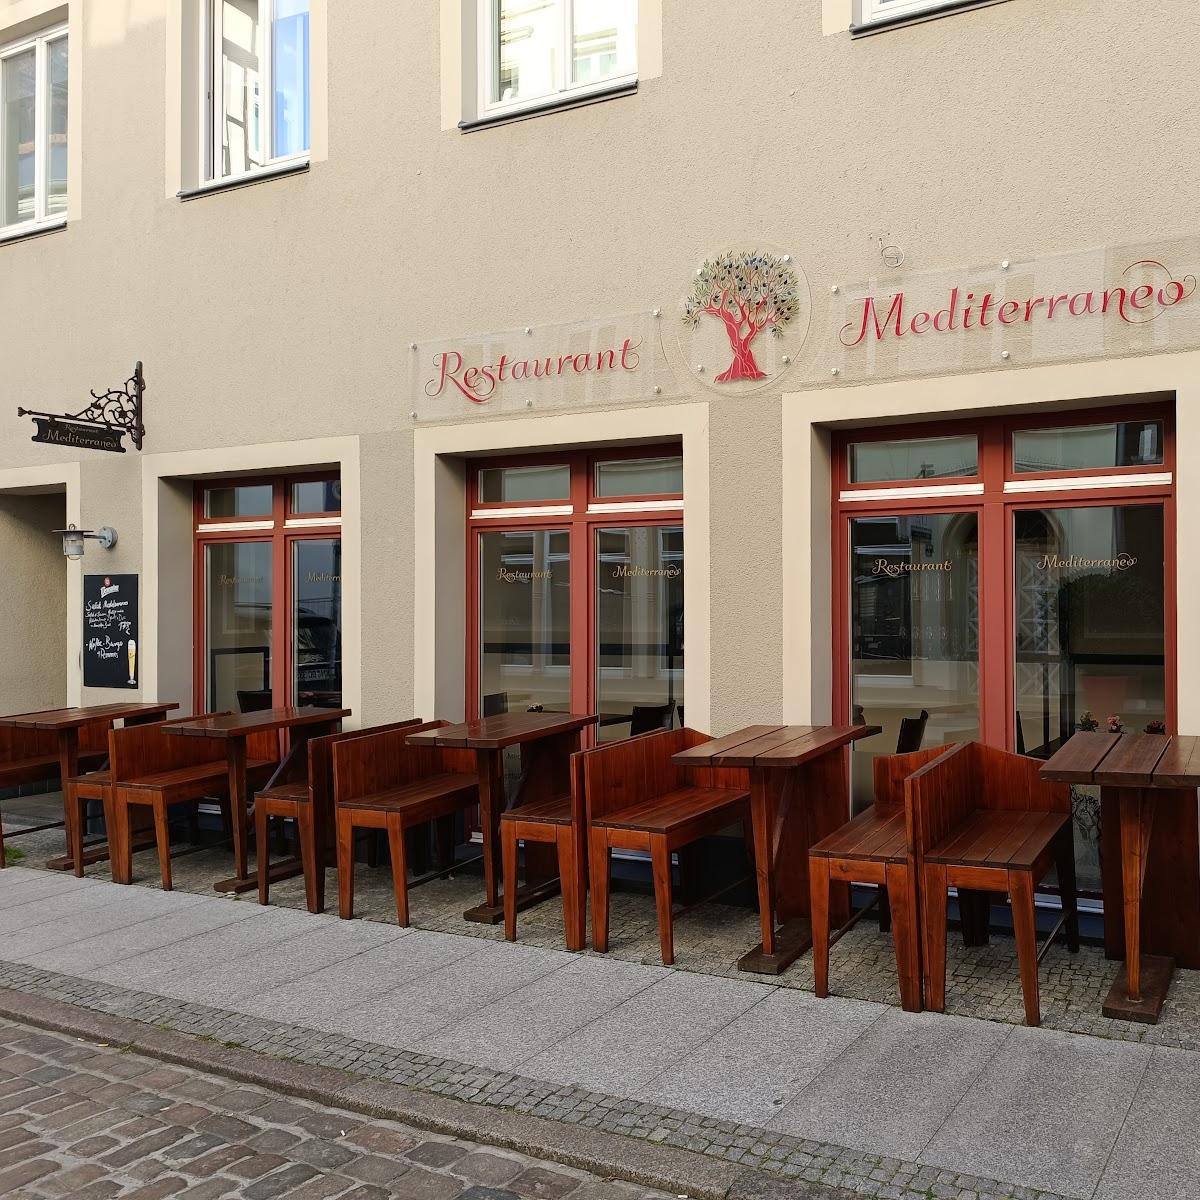 Restaurant "Restaurant Mediterraneo" in Schwerin